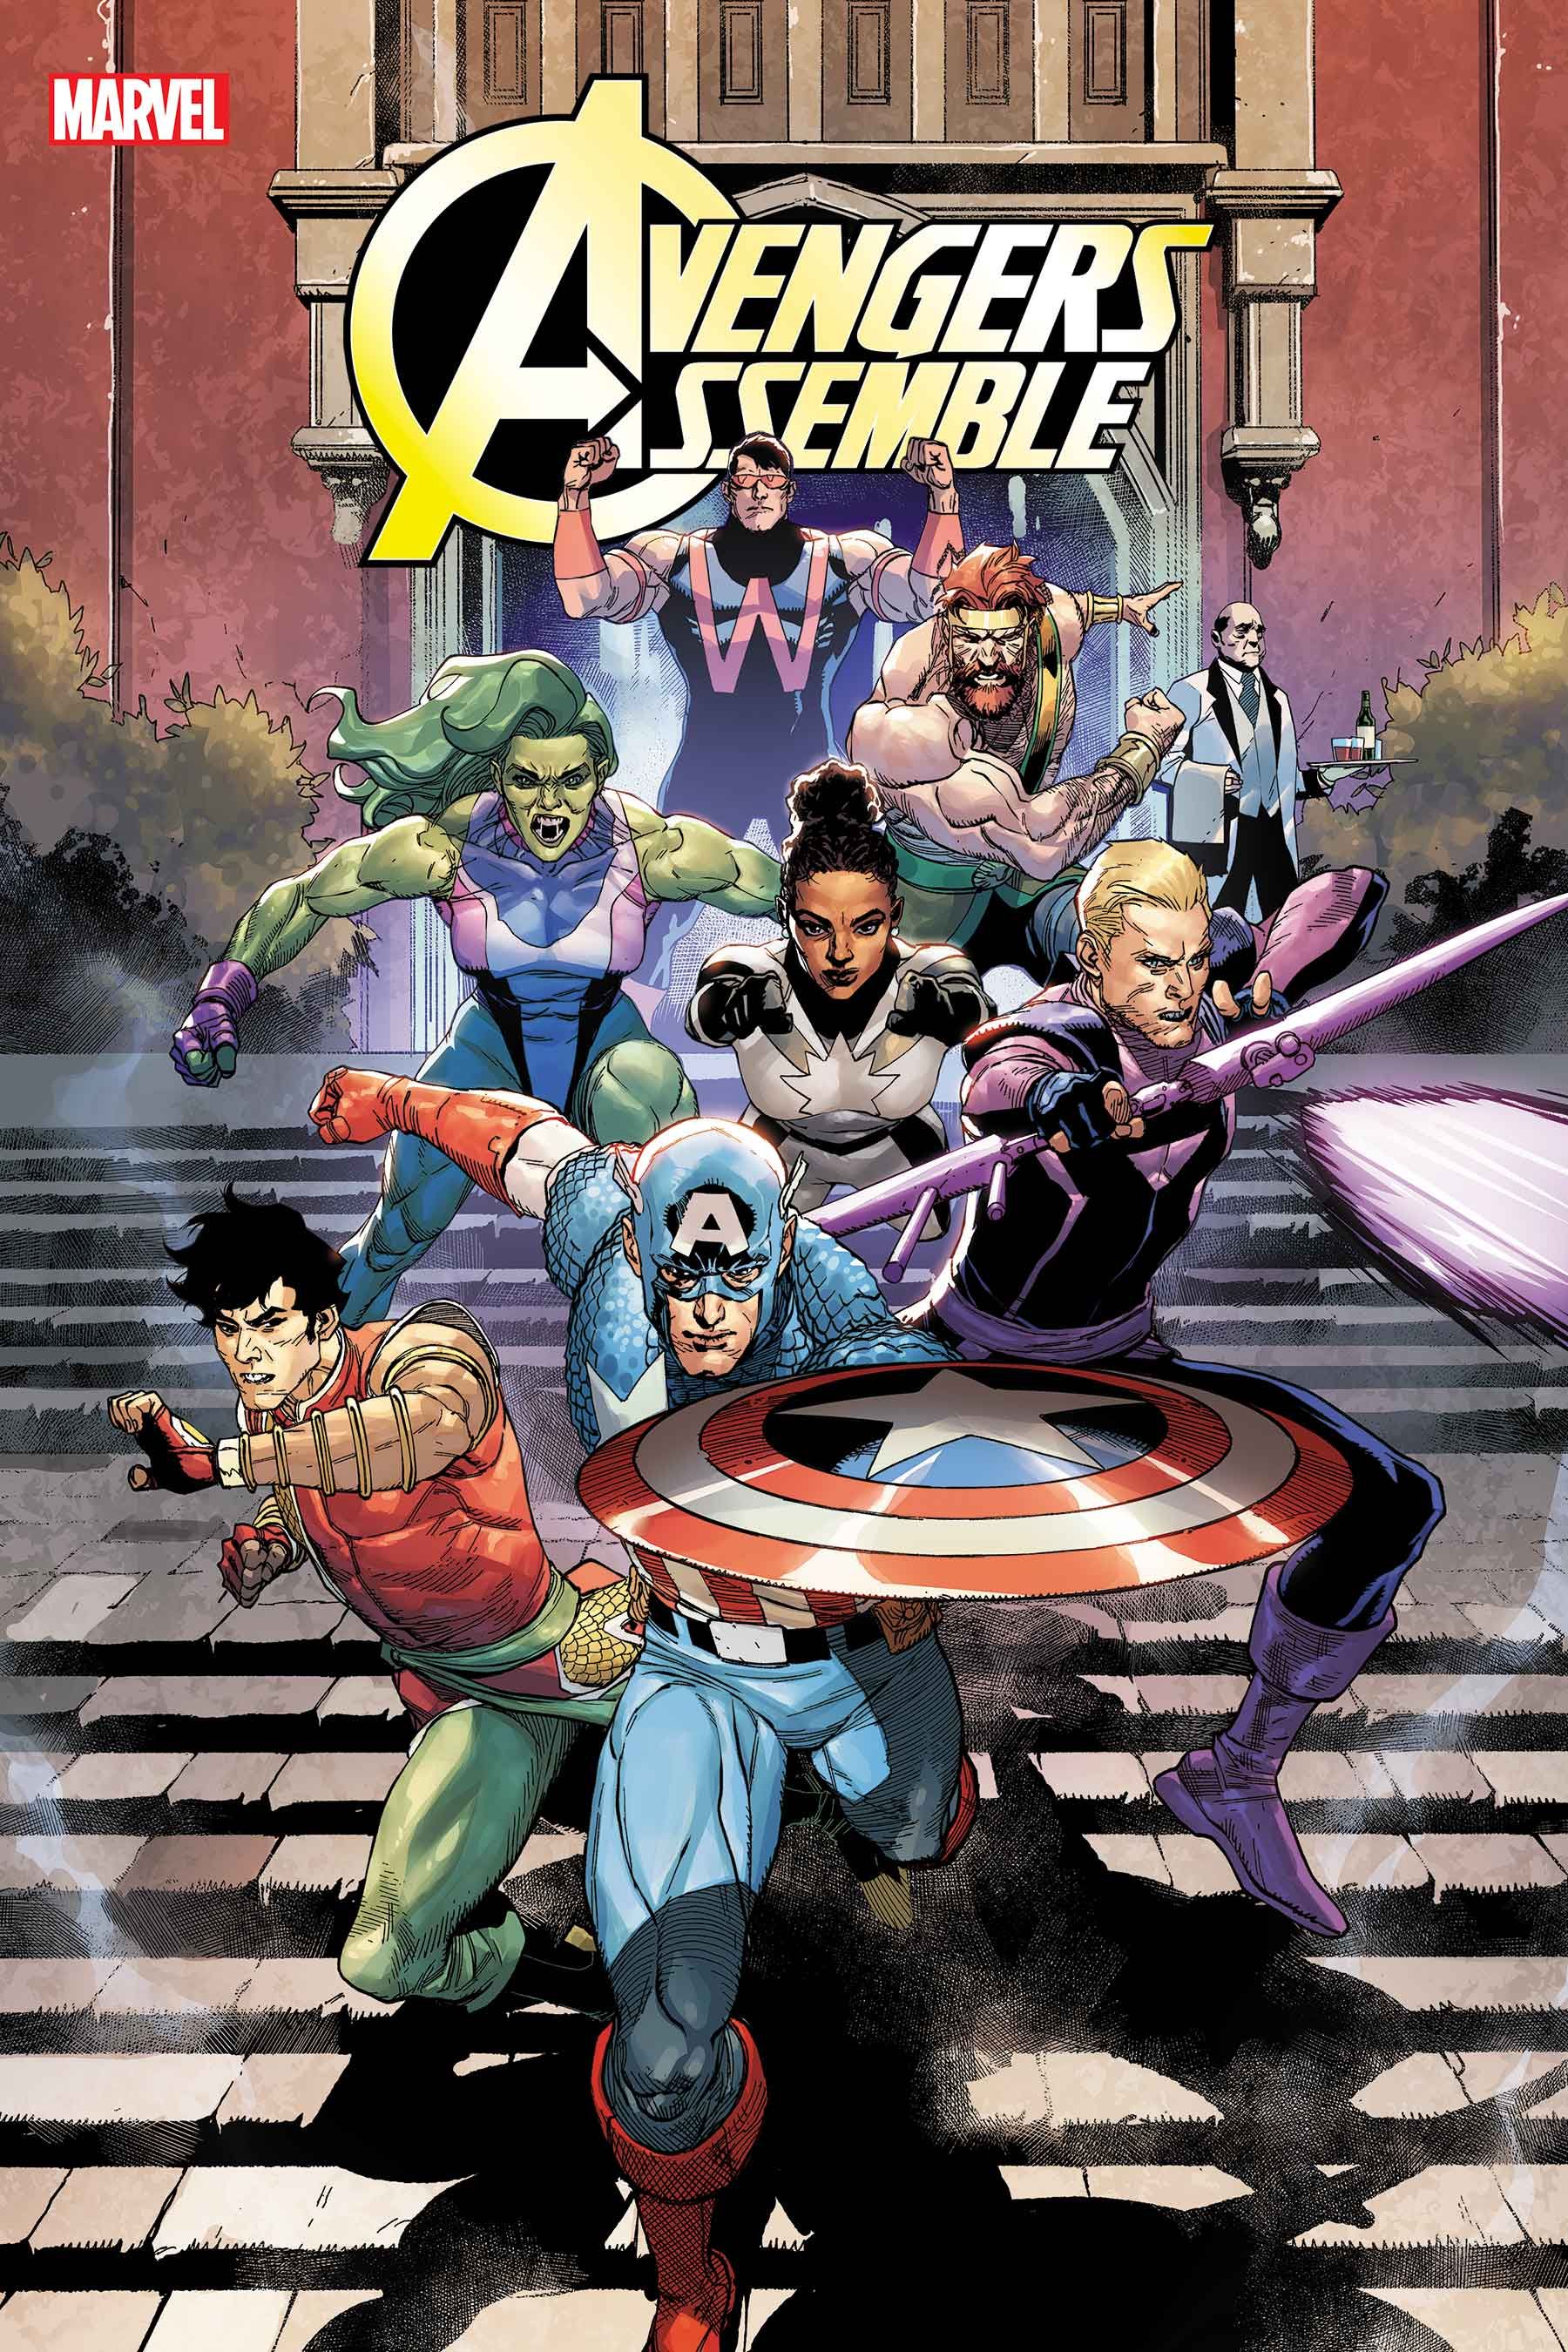 Капитан Америка формирует новую команду Мстителей